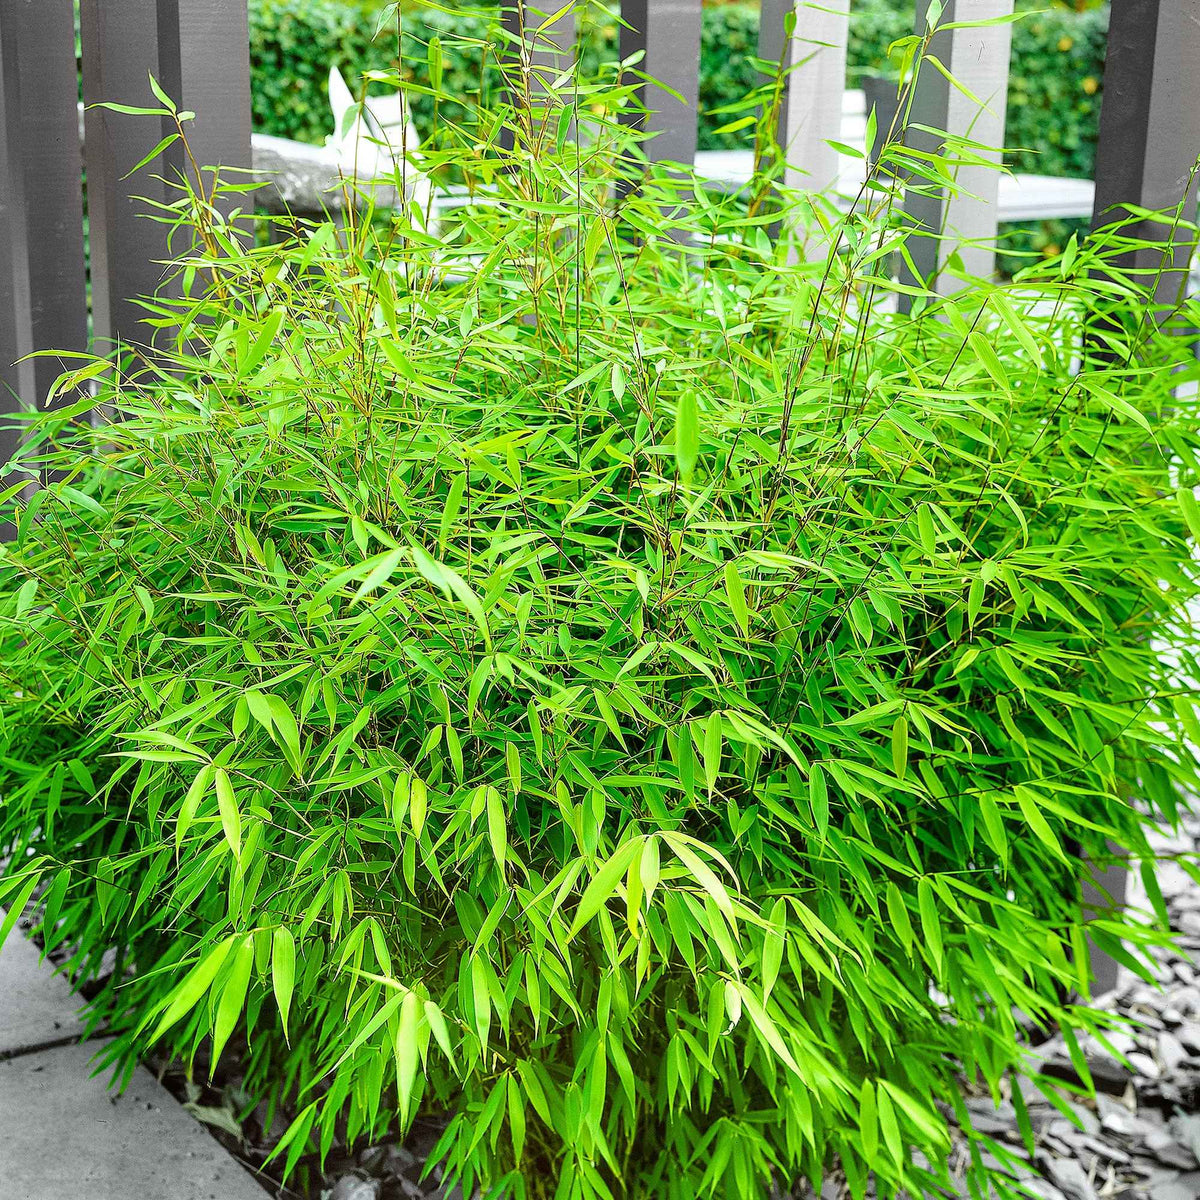 Bambou non-traçant - Bambou non invasif